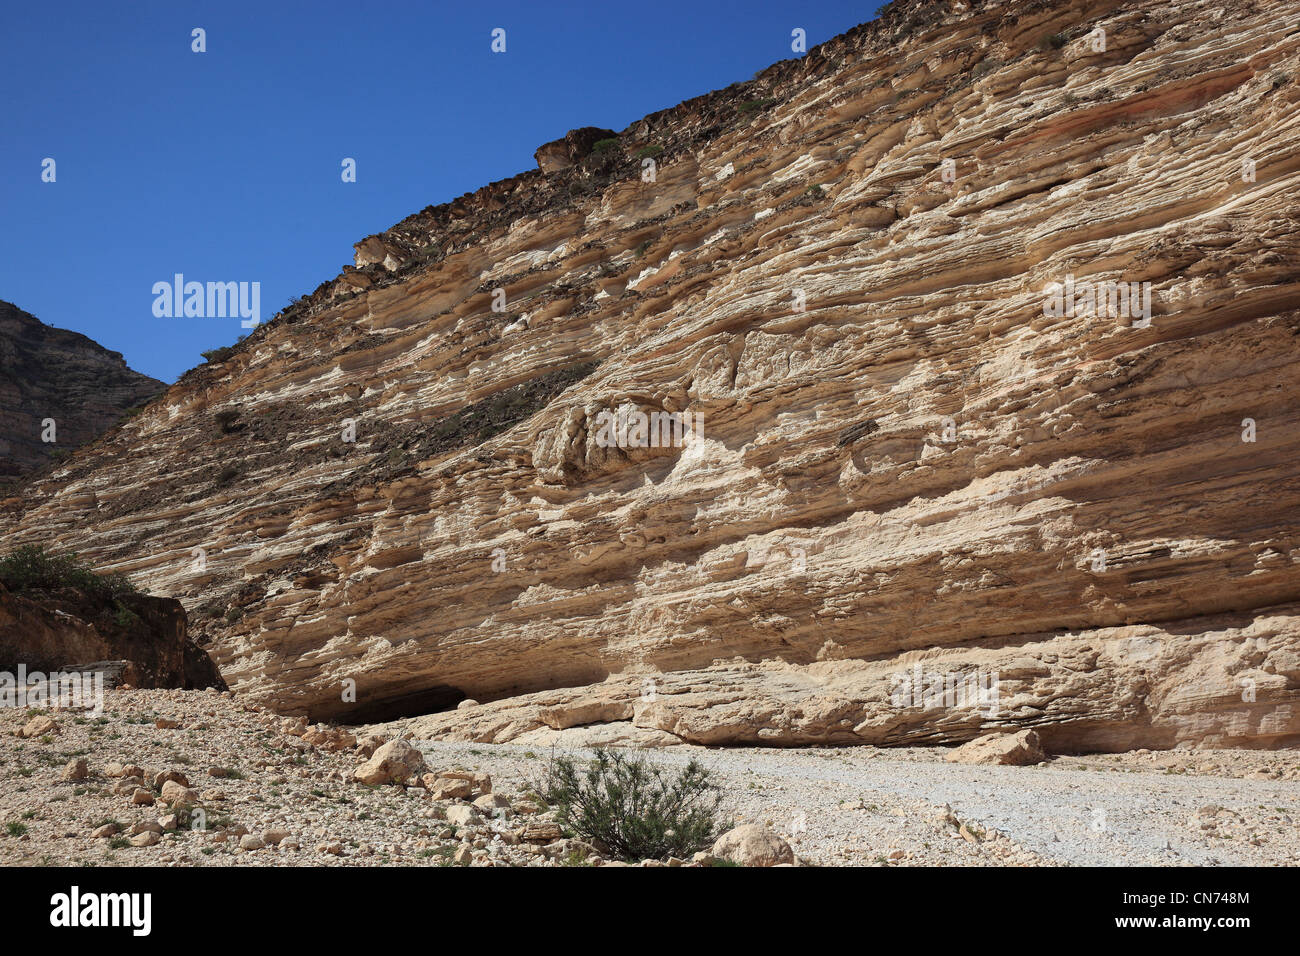 Wadi Afawl, Landschaft des südlichen Dhofar, Jabal al-Qamar, Oman Stock Photo